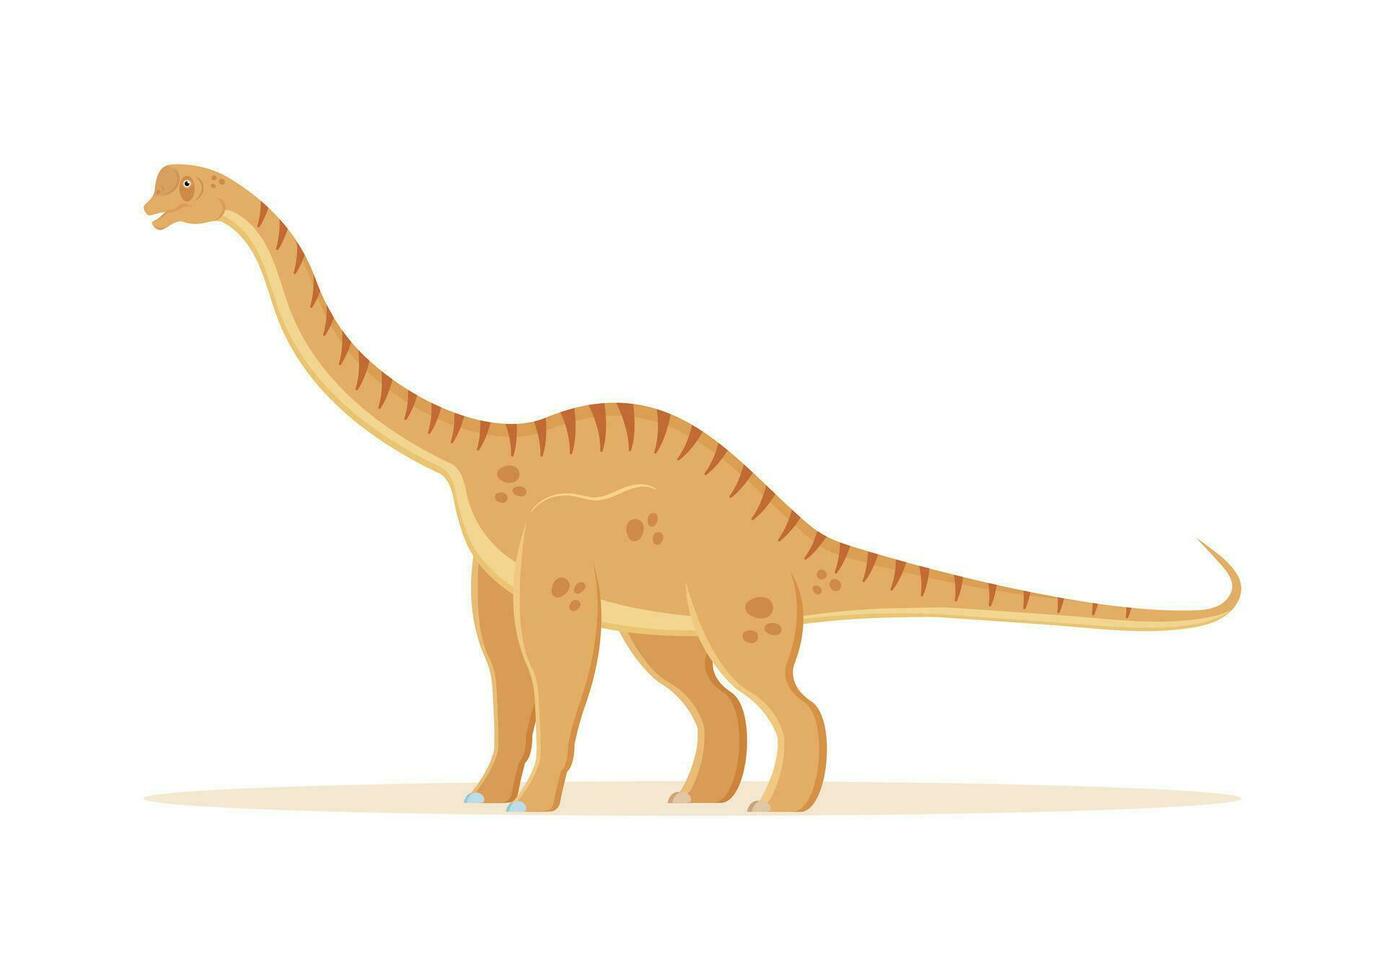 europassauro dinossauro desenho animado personagem vetor ilustração.jpg